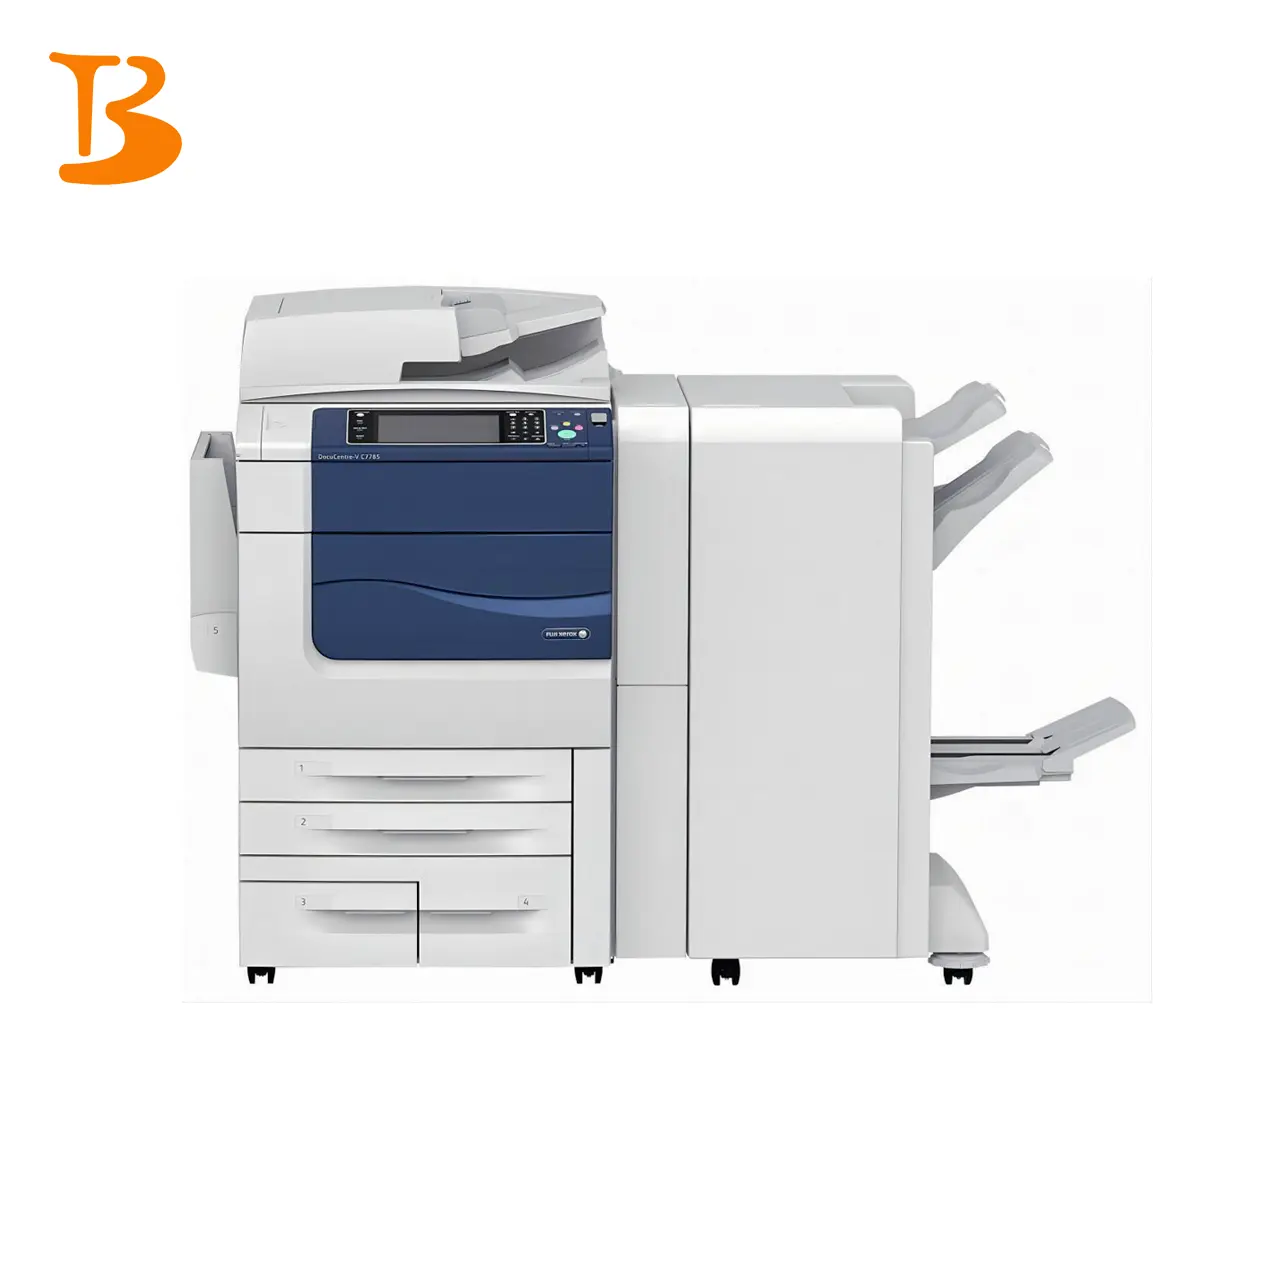 Fábrica al por mayor fujixerox máquina de impresora a color de segunda mano c7780 7785 máquina copiadora usada para impresora Xerox